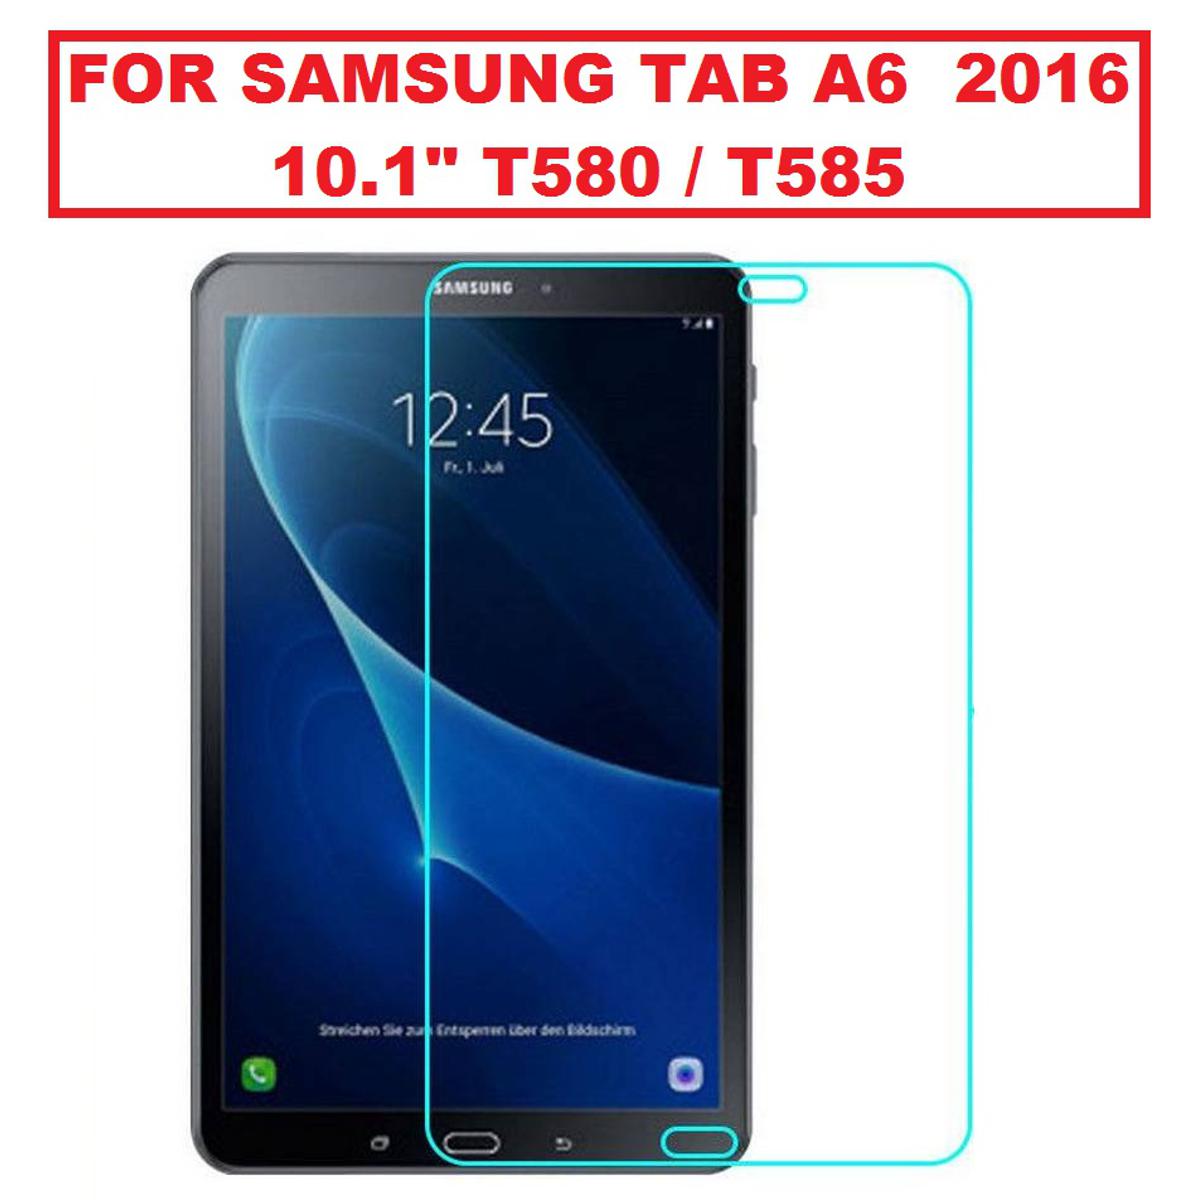 Protection d'écran pour tablette XEPTIO Samsung Galaxy TAB A 10,1 2019 Wifi  - 4G/LTE : Protection d'écran en verre trempé - Tempered glass Screen  protector 9H premium / Films vitre